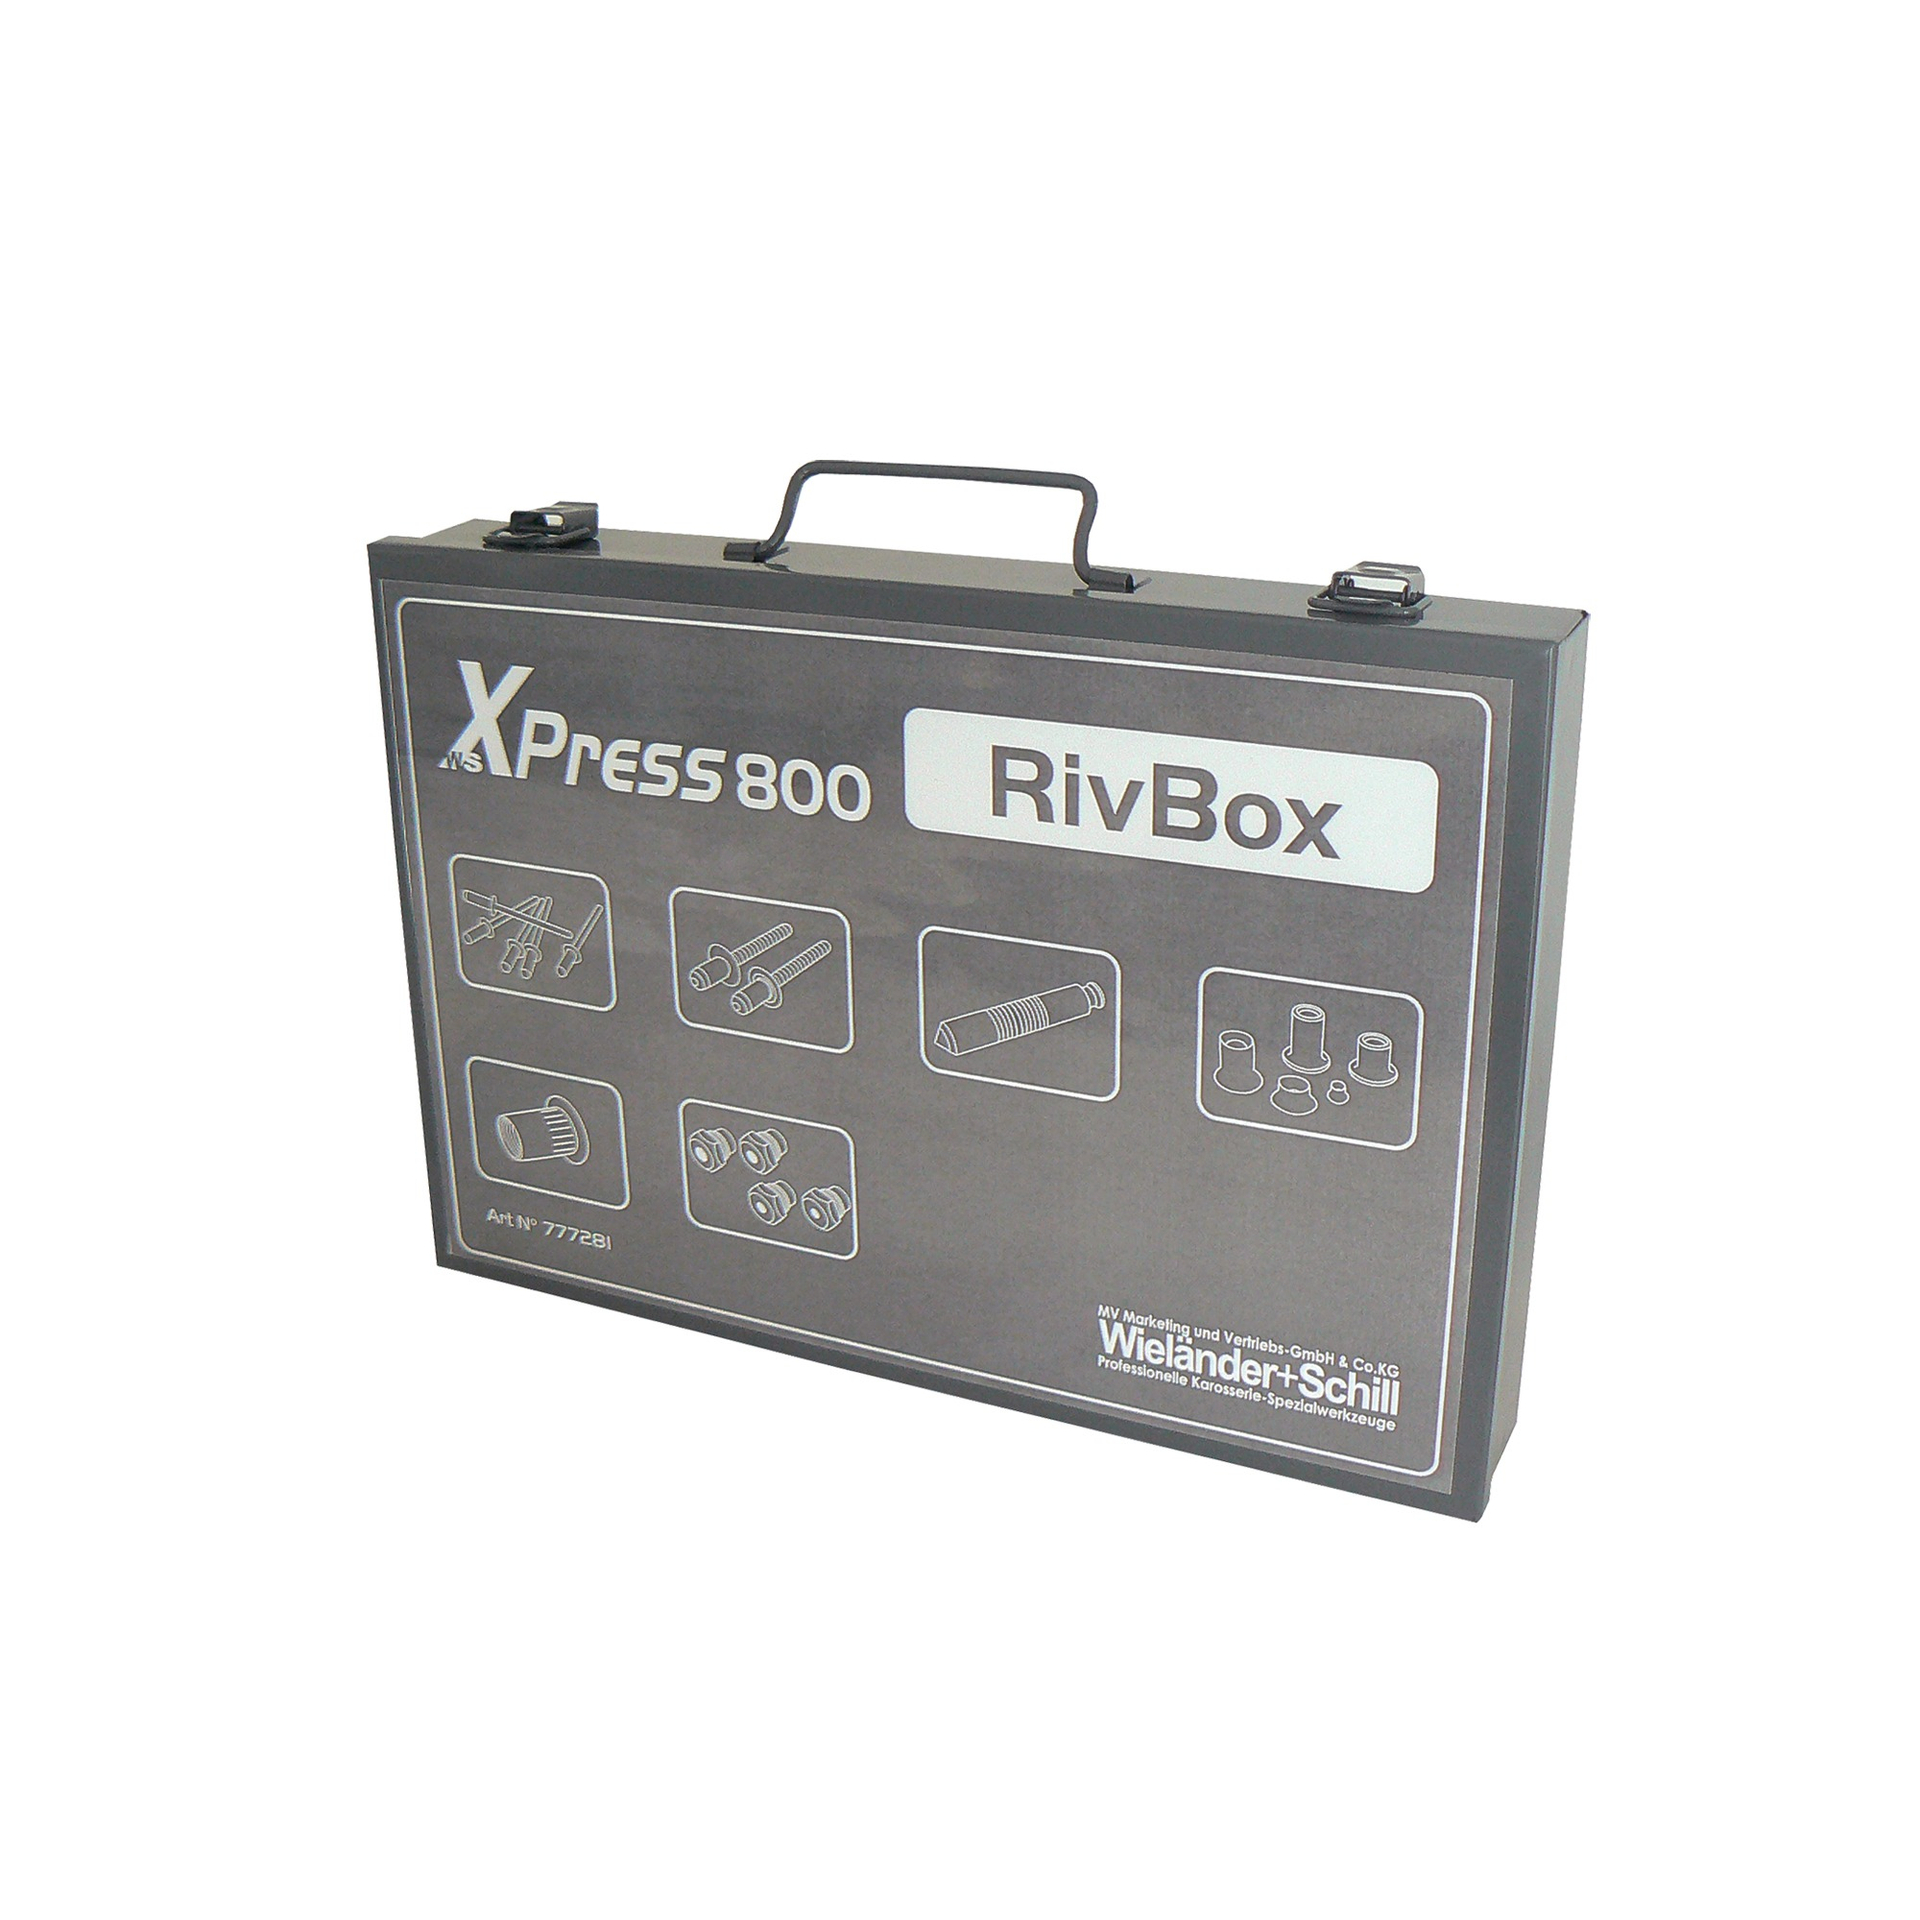 Комплект заклепок для XPress 800 RivBox N1, WS Wieländer+Schill - Німеччина купити